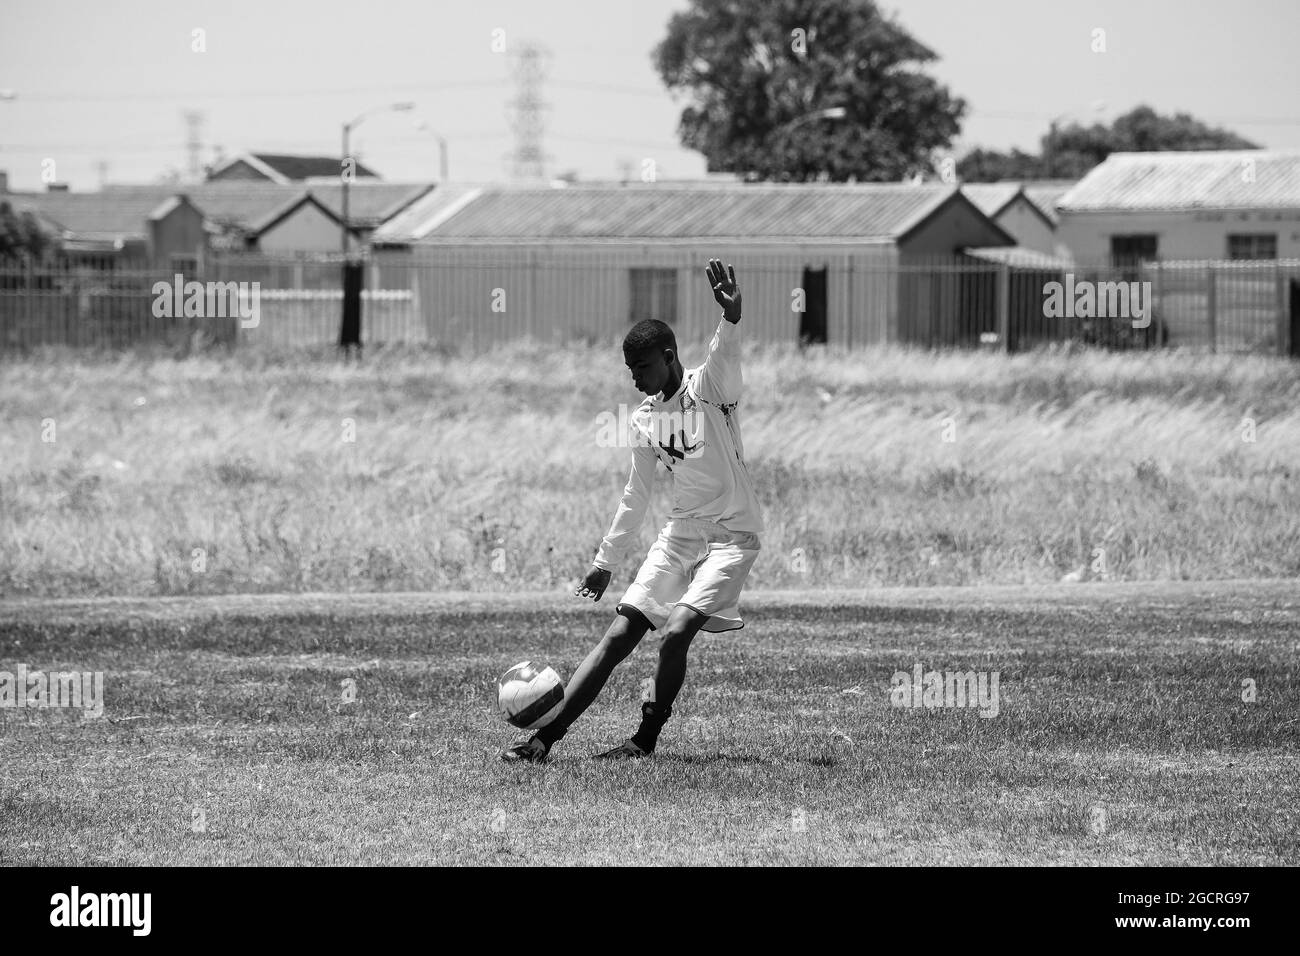 CAPE TOWN, AFRIQUE DU SUD - 05 janvier 2021 : échelle de gris d'un jeune athlète jouant au football à l'école de Cape Town, Afrique du Sud Banque D'Images